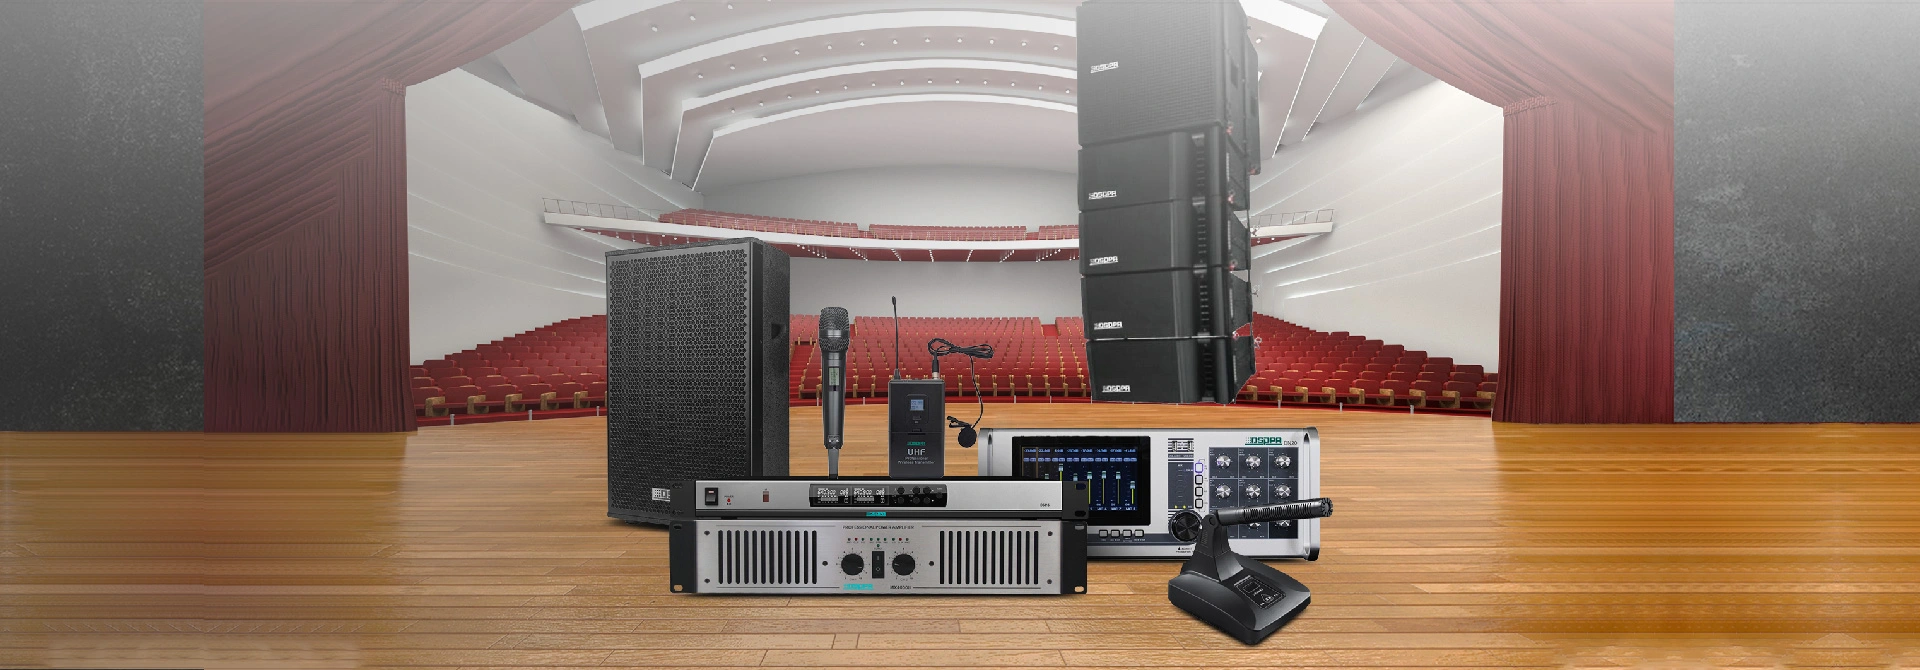 Soluciones profesionales de sonido Sytsem para salón multifuncional